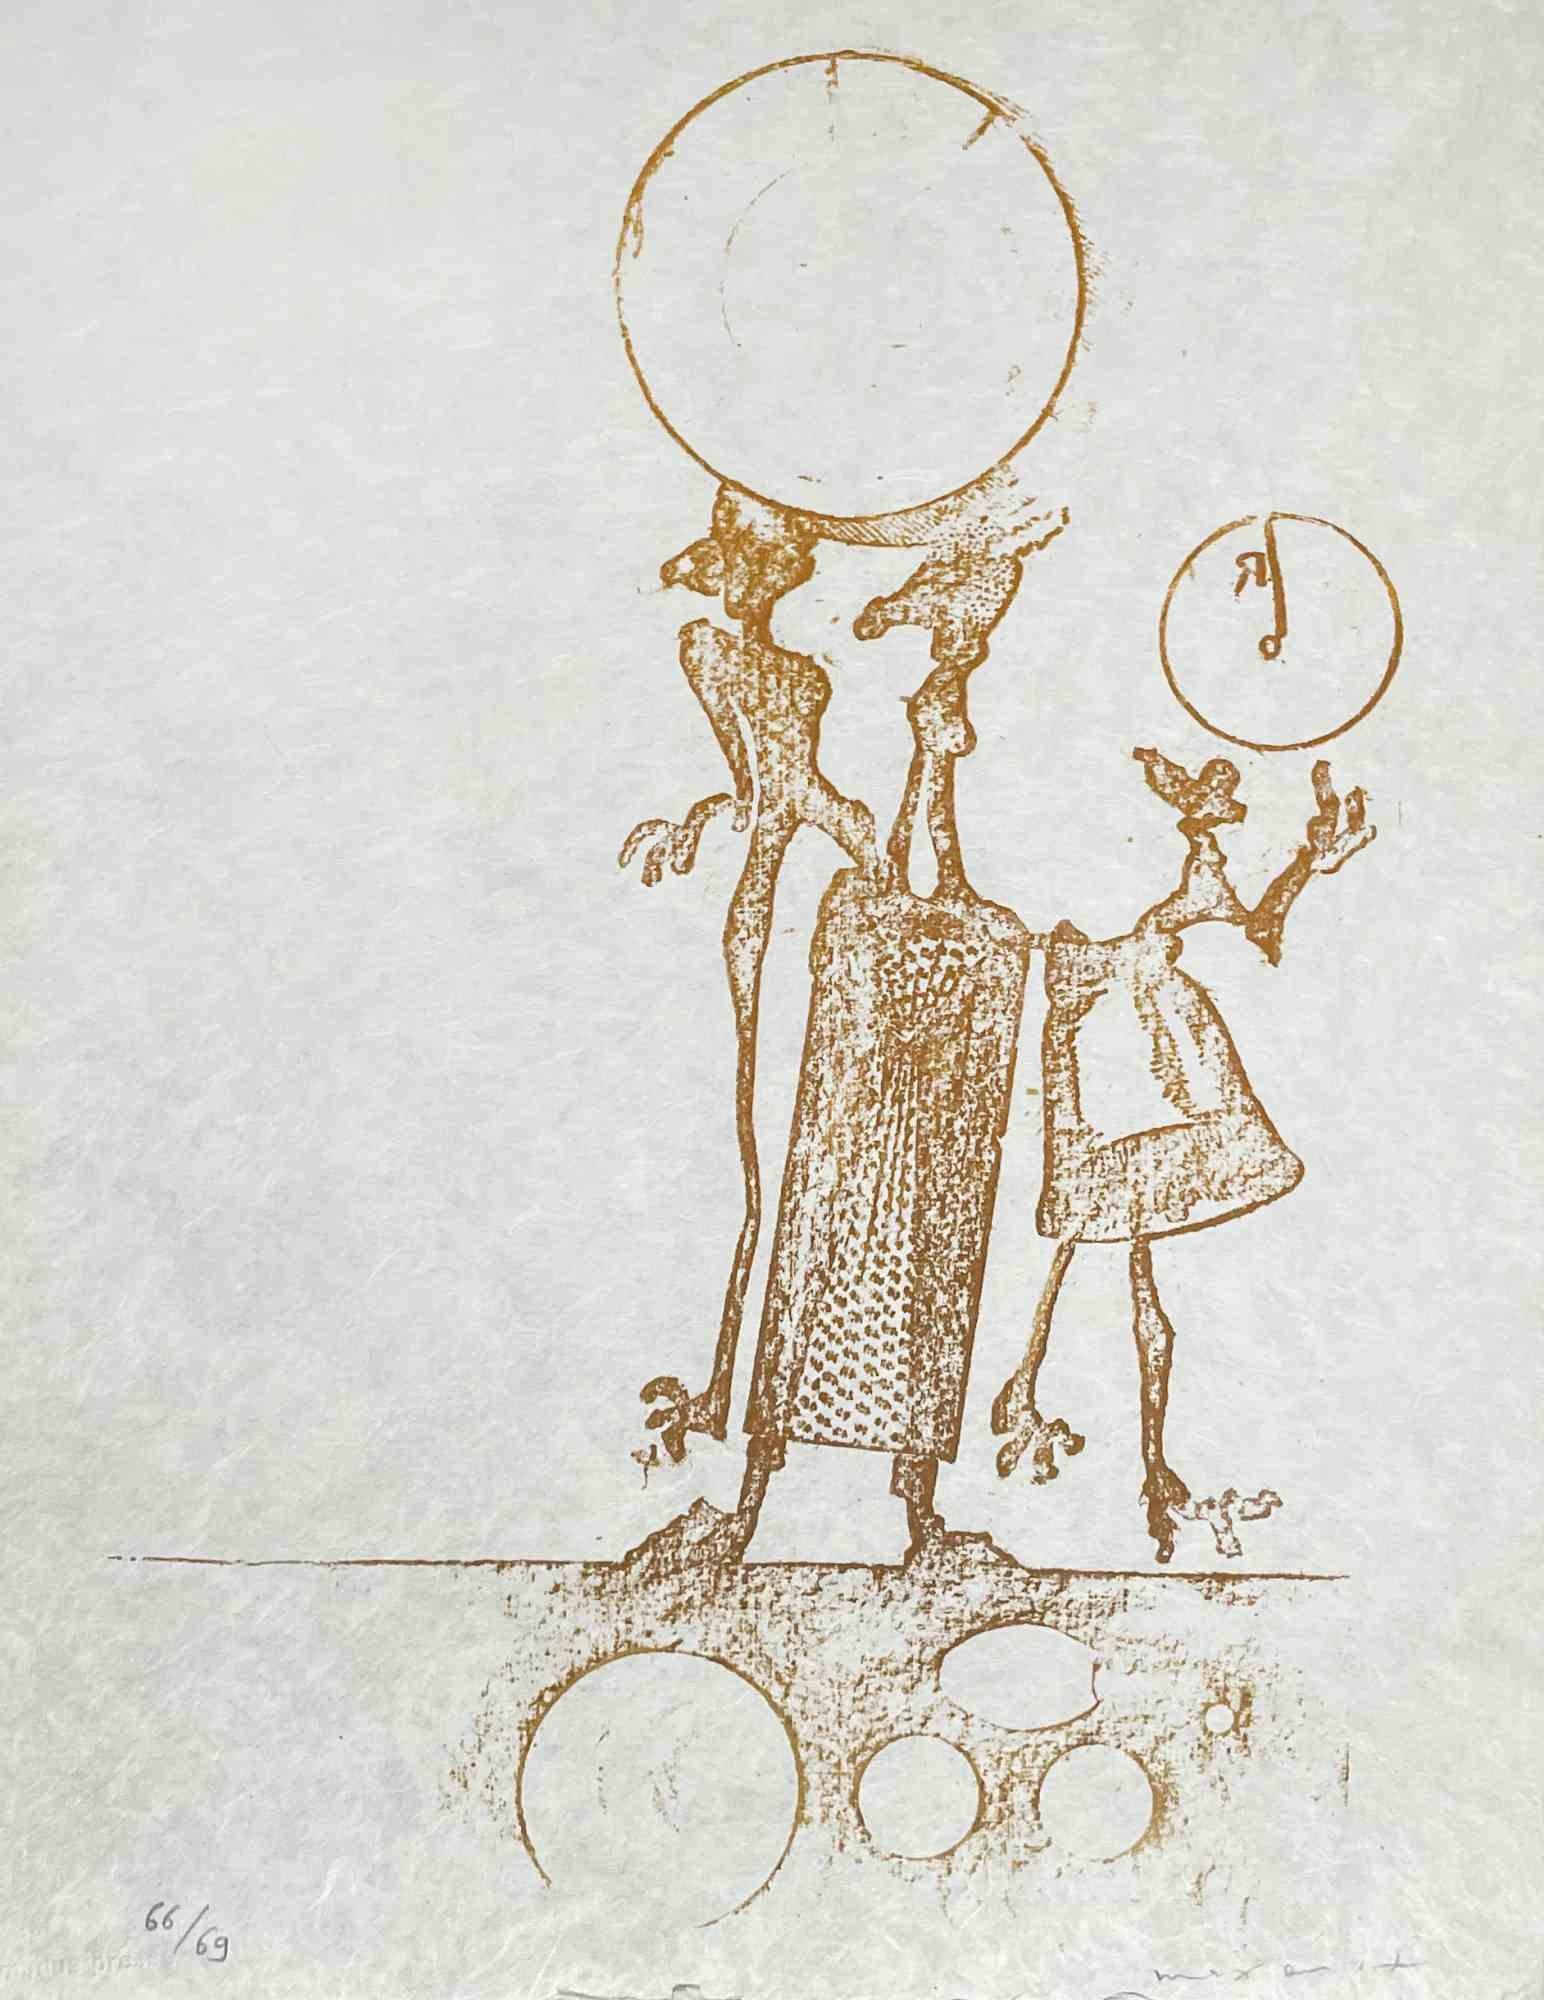 Wunderhorn est une œuvre d'art réalisée par Max Ernst, Lewis Carroll, 1970. 

Lithographie sur papier Japon, signée et numérotée 68/69.

Imprimé et publié par Manues Press (Tampon de gaufrage).

32,5 x 25 cm

Très bon état.